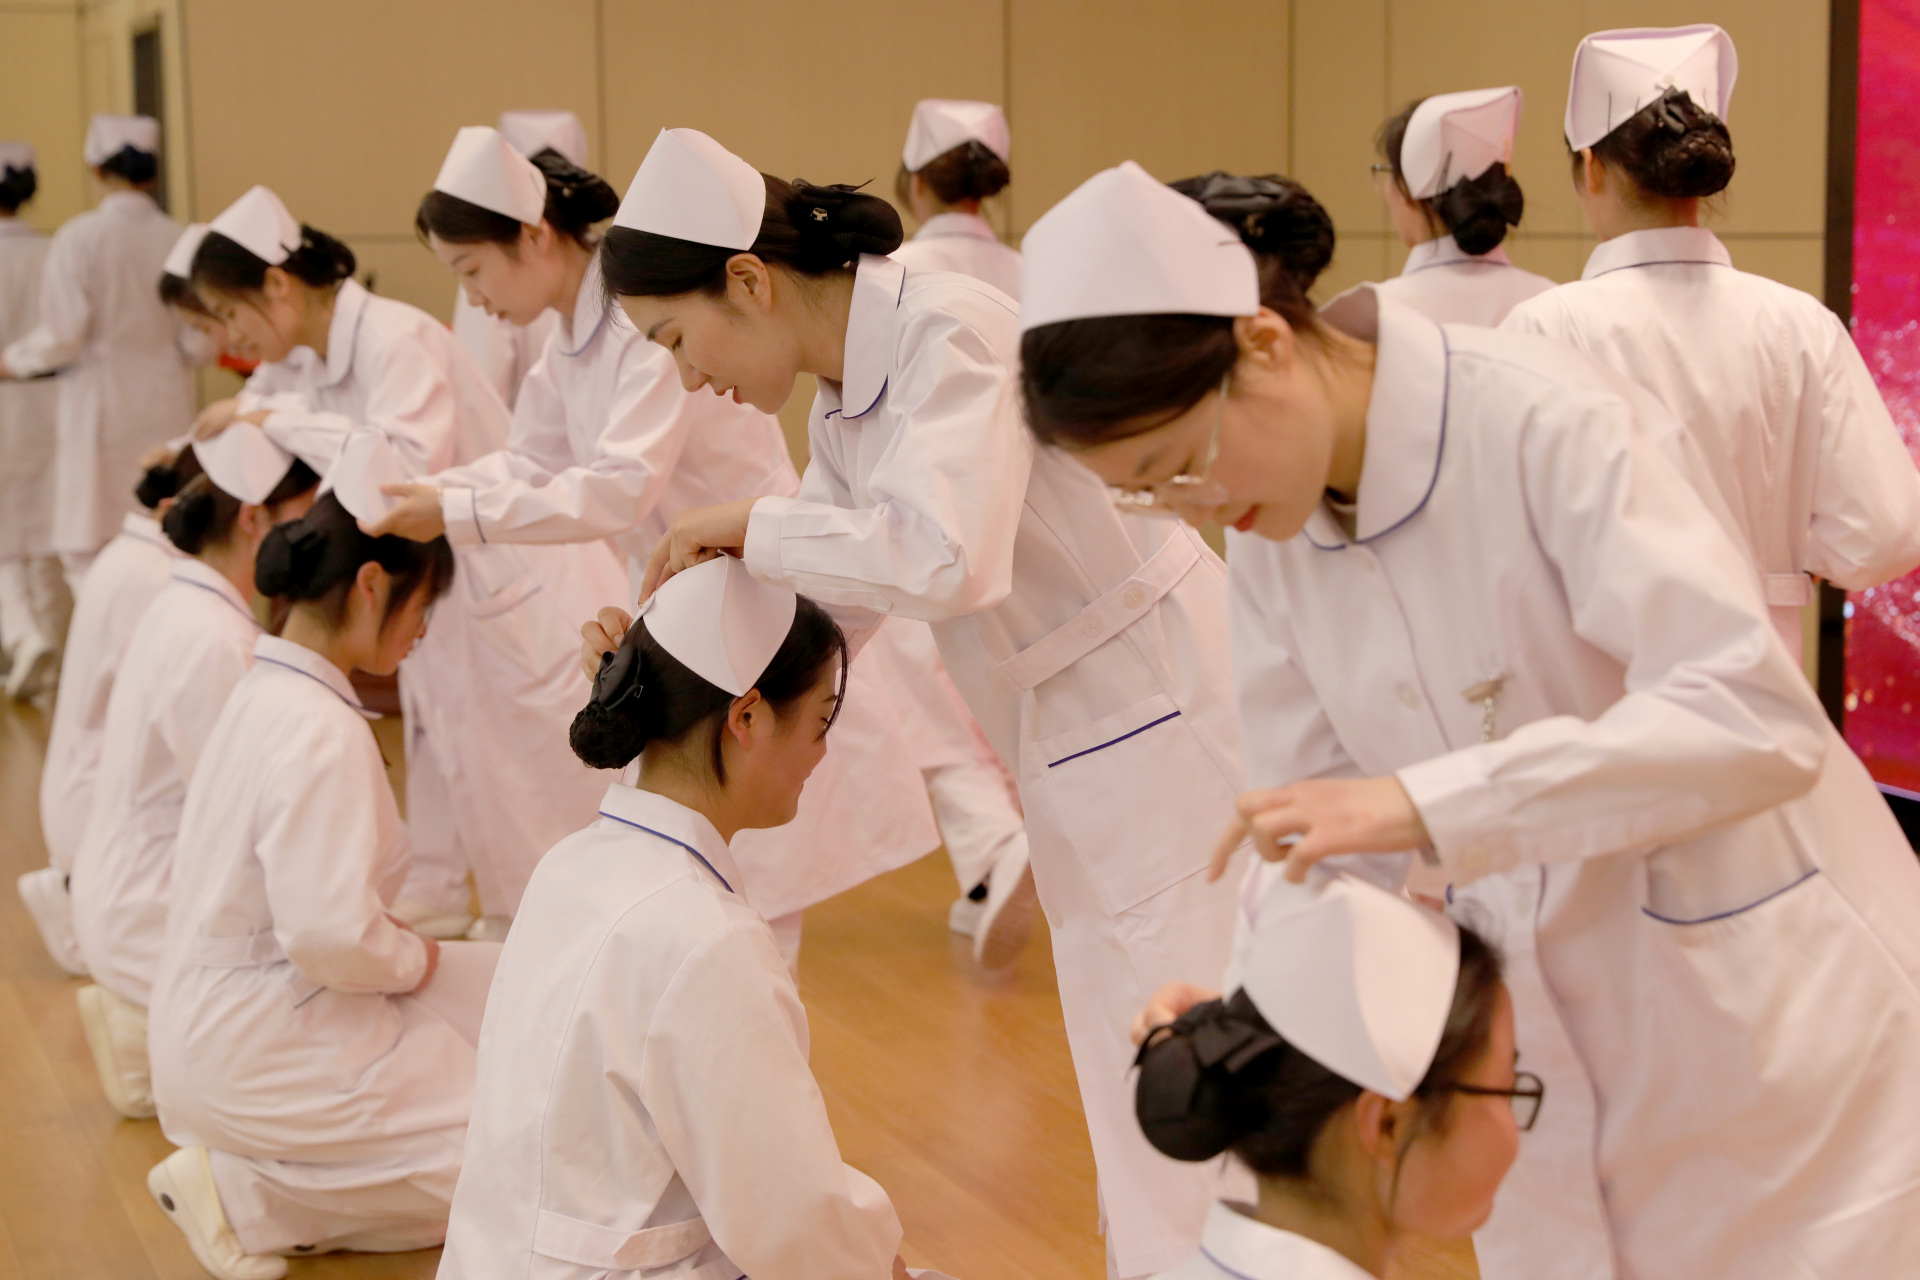 安徽万通综合系护理专业 举行护士节授帽仪式 今天,圣洁燕帽,赓续